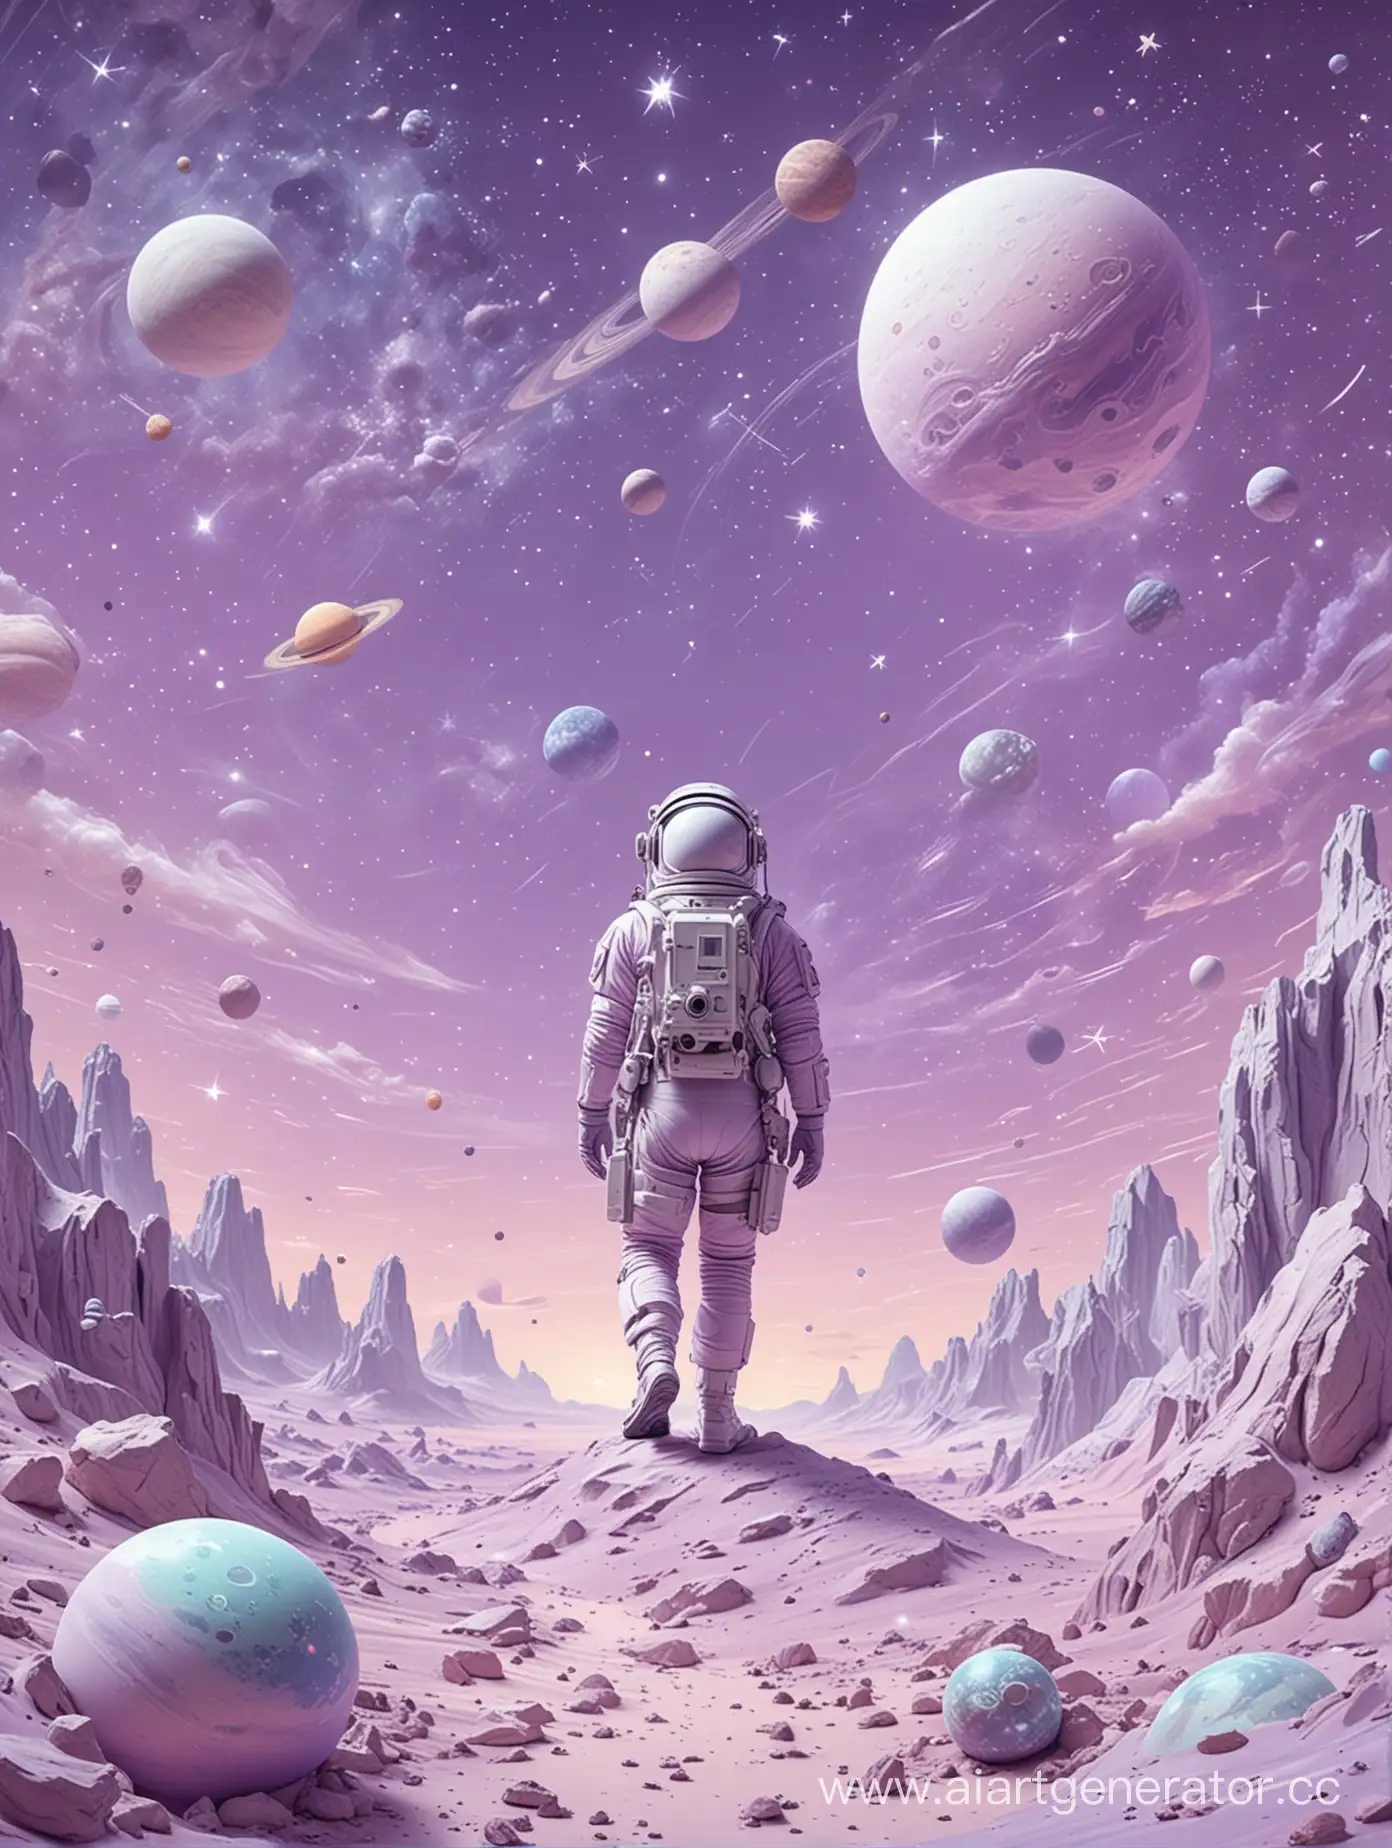 космическая тематика в пастельных сиреневых тонах с маленьким космонавтом, звёздами и планетами и космическим пейзажем